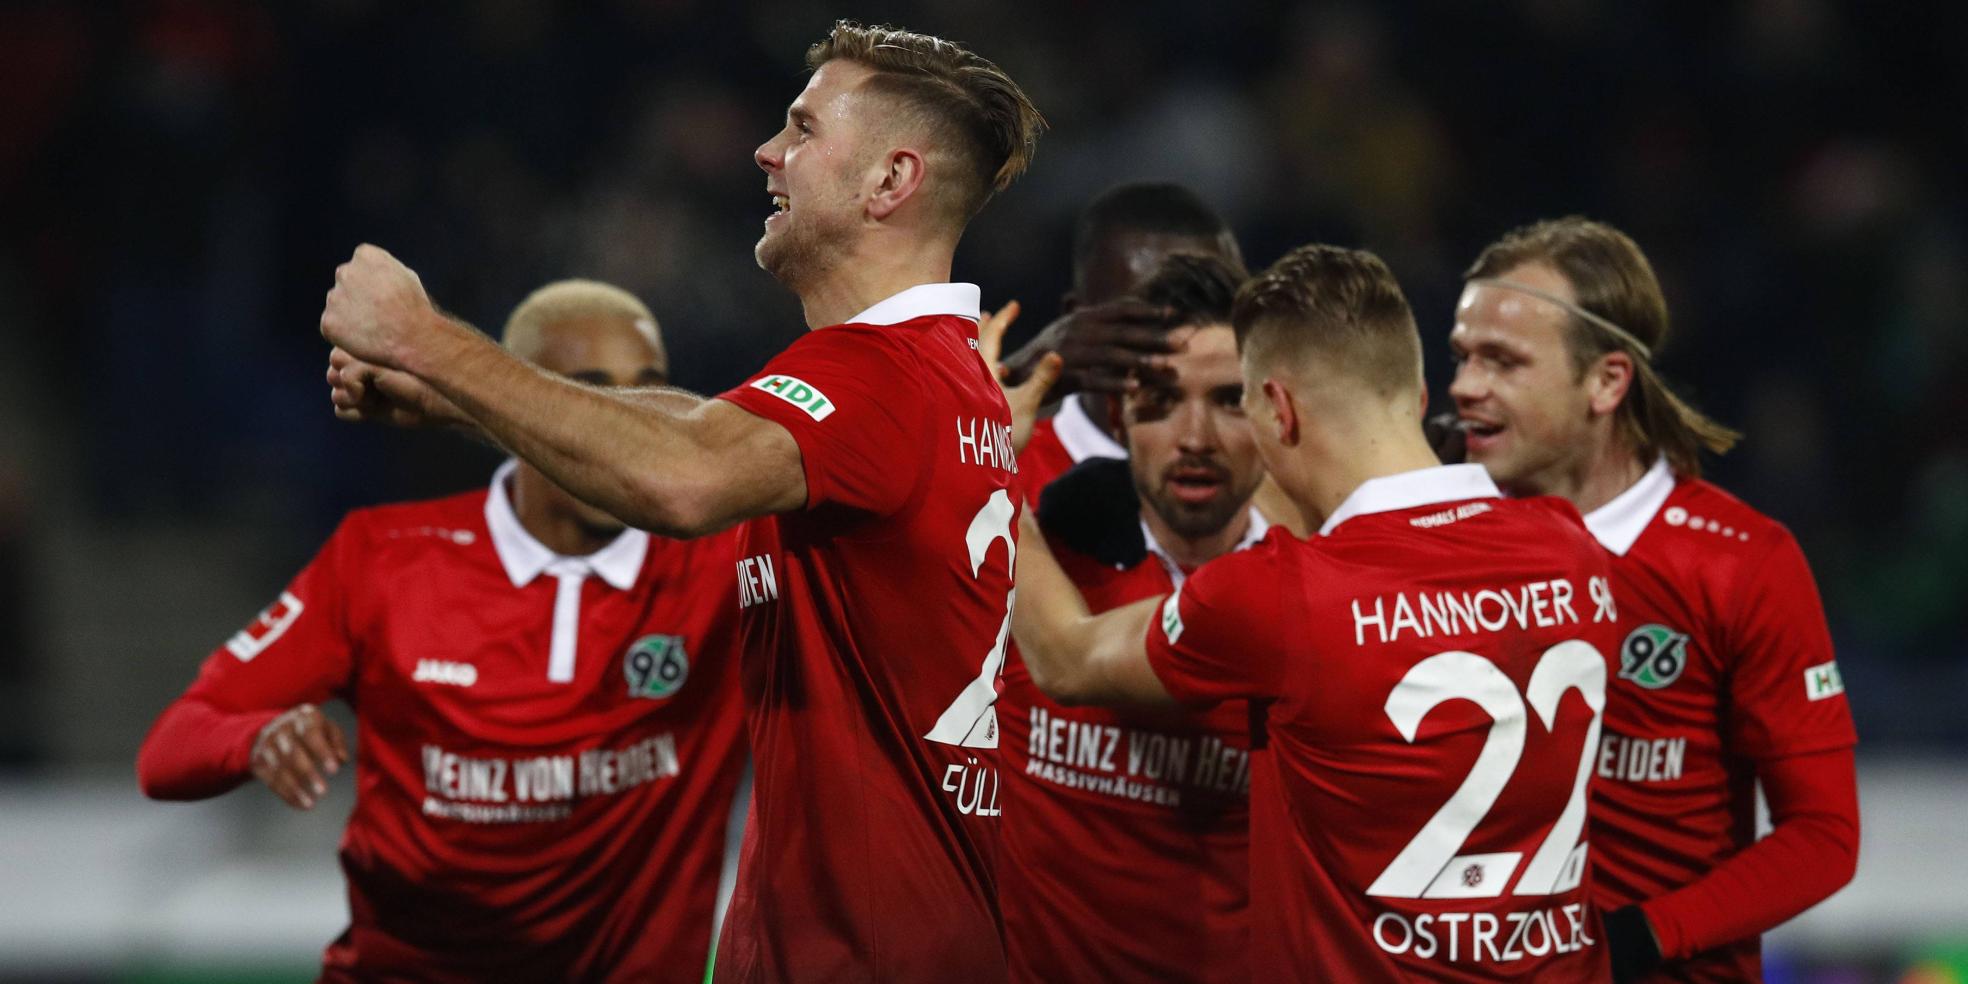 Hannover 96: Die zehn besten Spieler nach Sofascore - Party ohne Bebou.